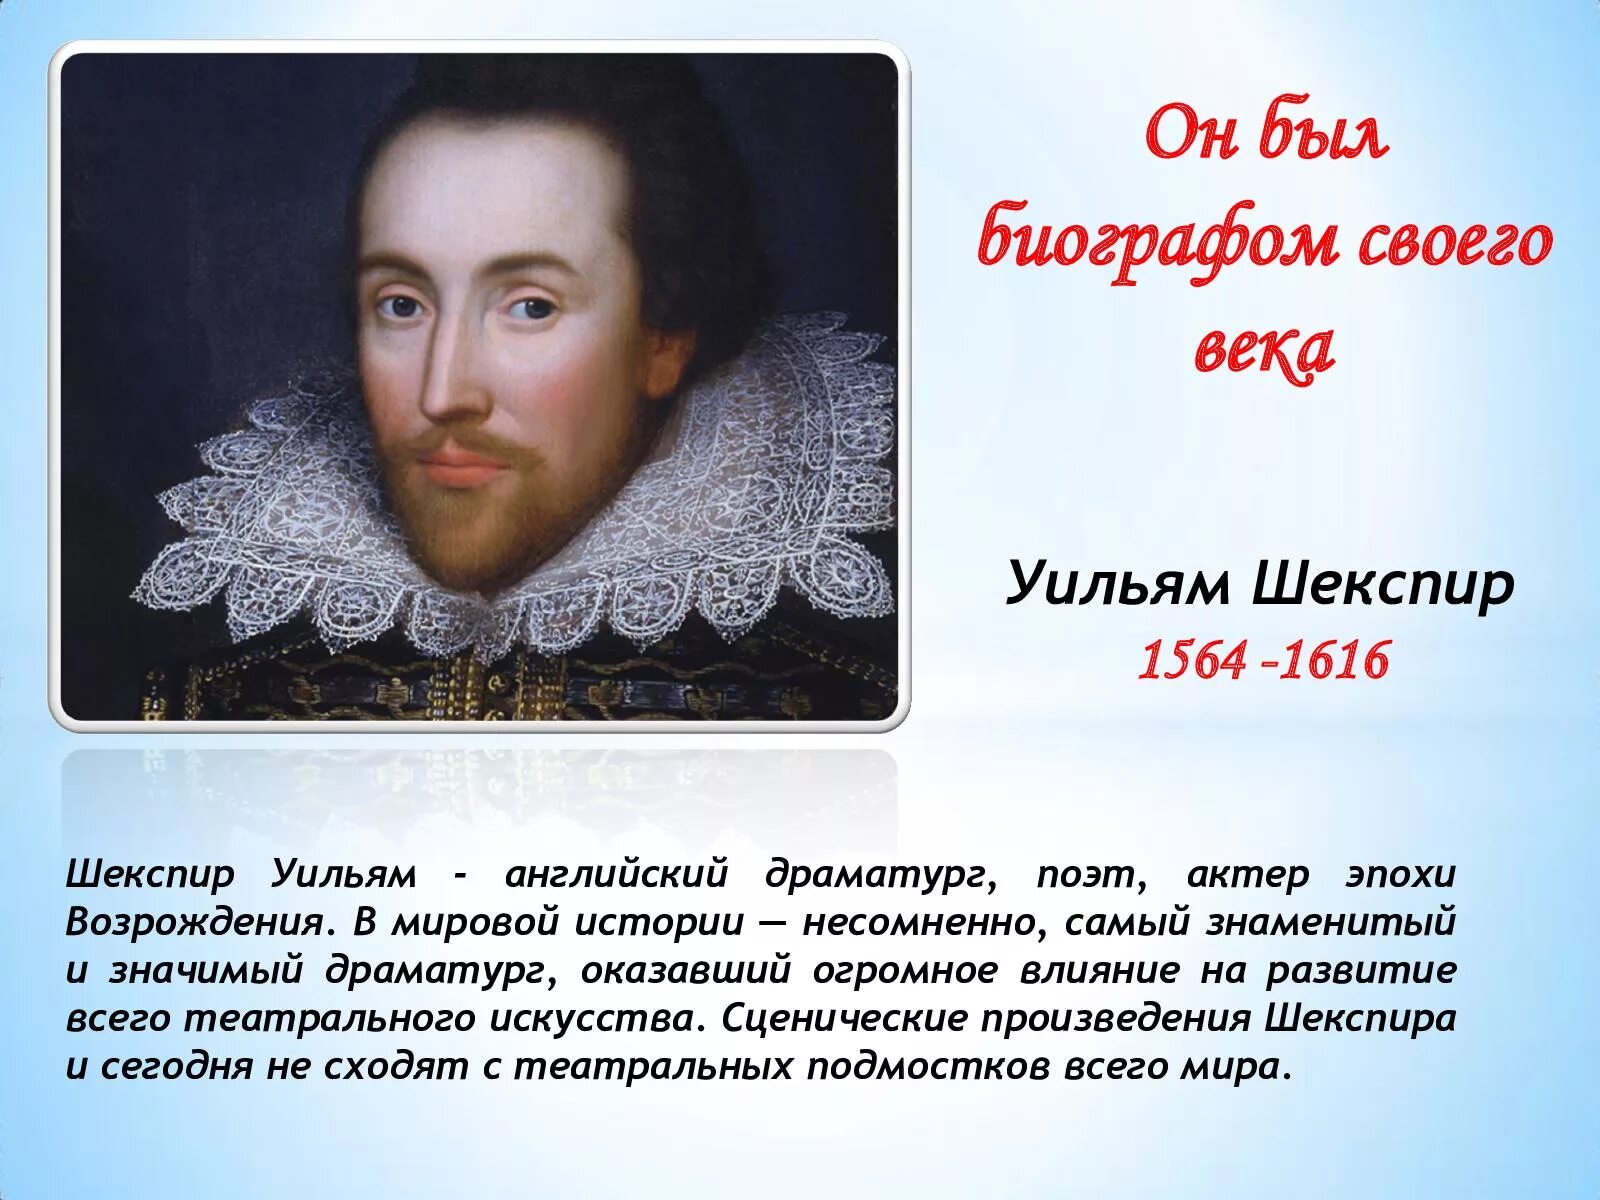 Мировое значение шекспира. Уильям Шекспир (1564-1616). Шекспир, Уильям (1564–1616), британский драматург и поэт.. Шекспир 1564-1616. Шекспир Возрождение.